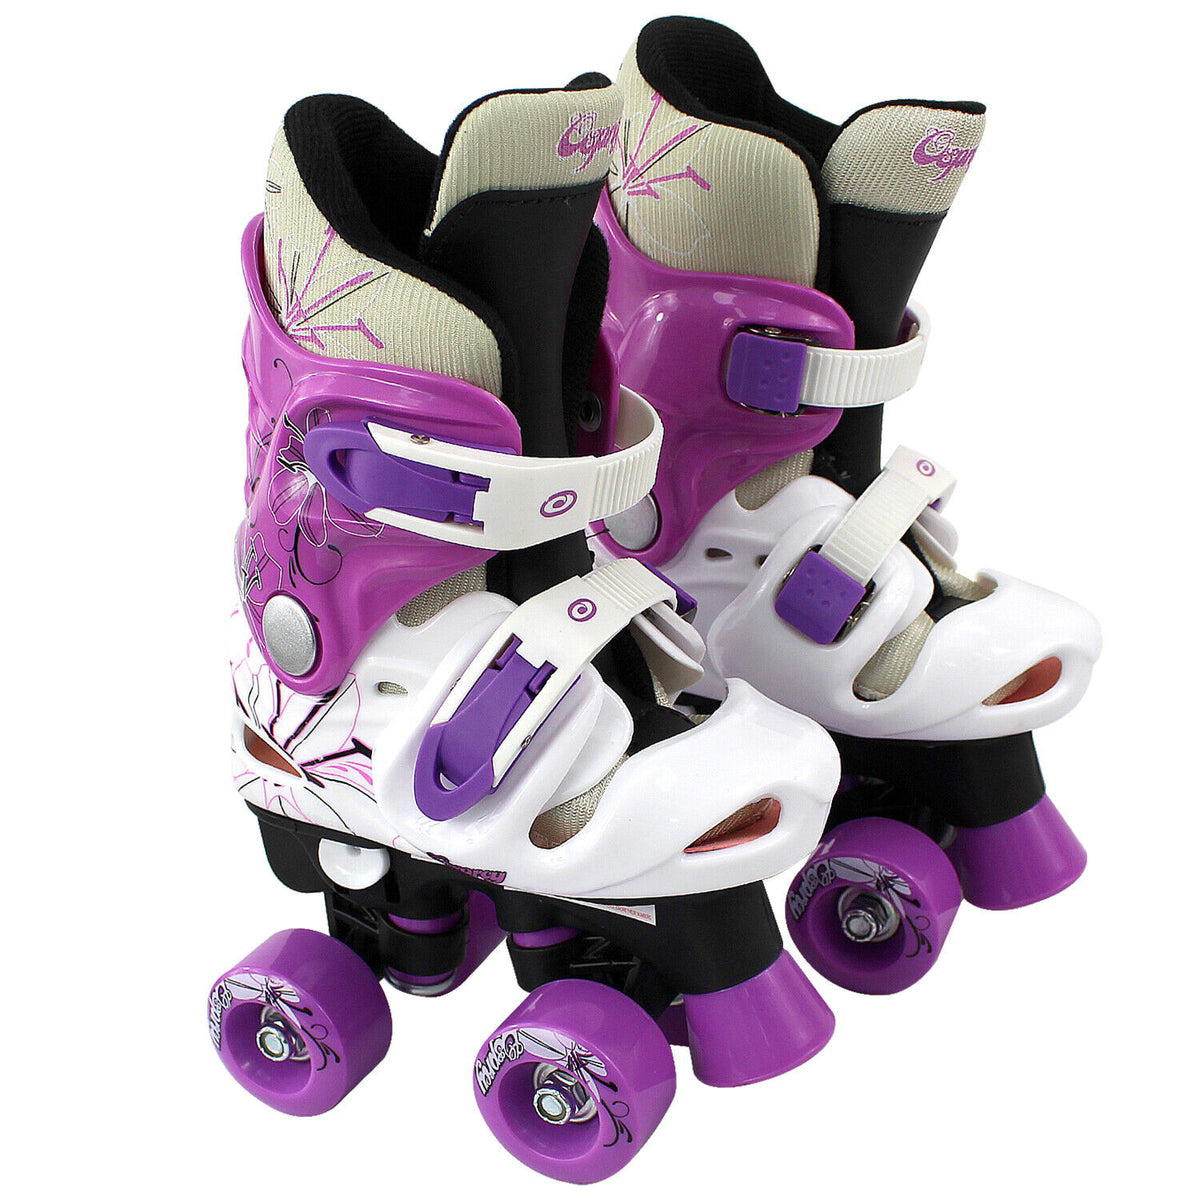 Cheap Roller Skates UK - Adjustable 4 Wheels Kids Roller Skates Boots